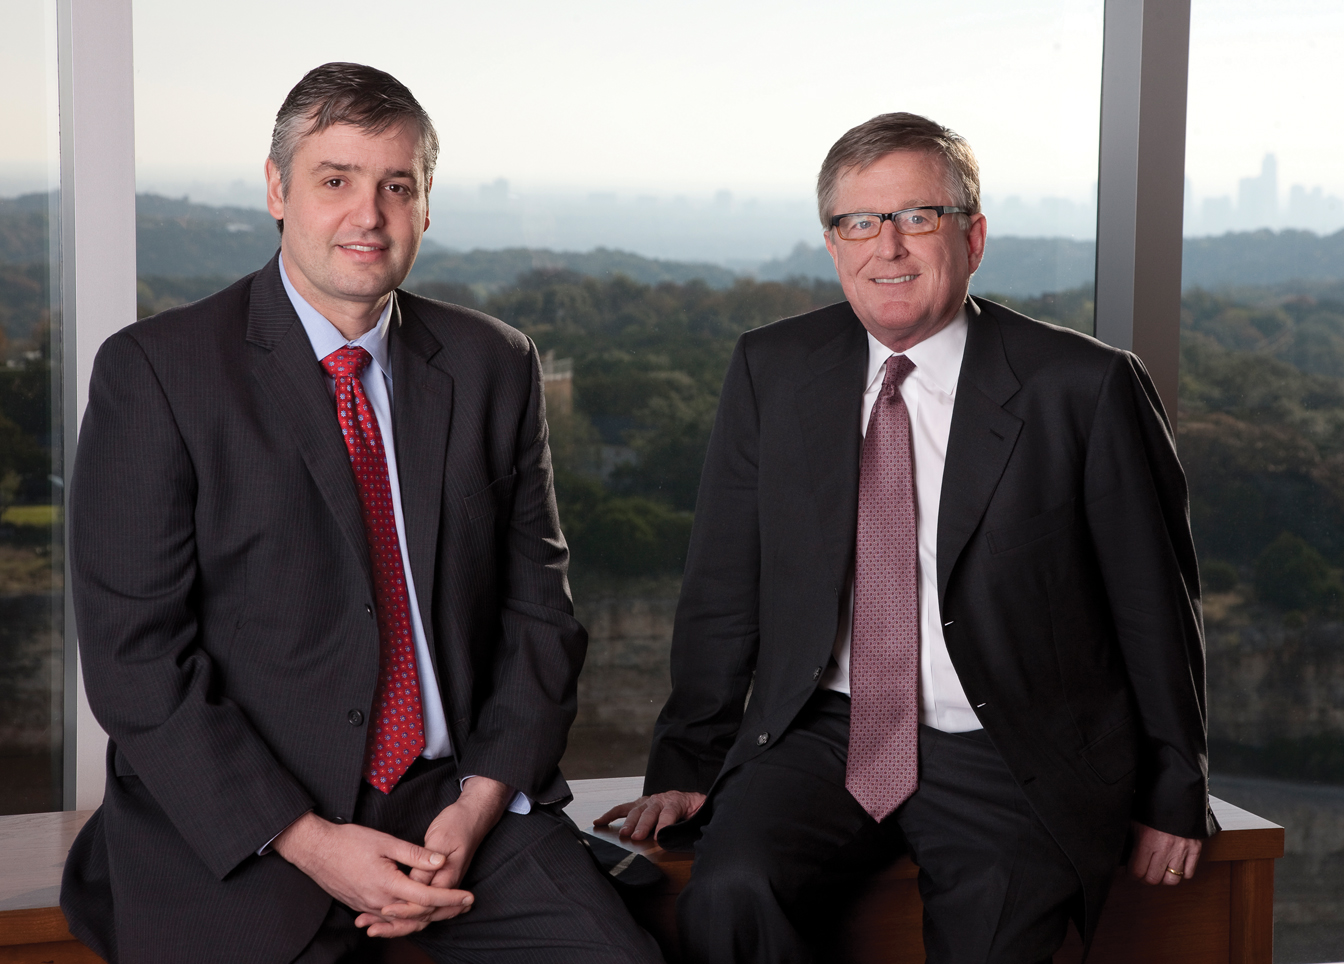 David Booth & Eduardo Repetto, co-CEOs